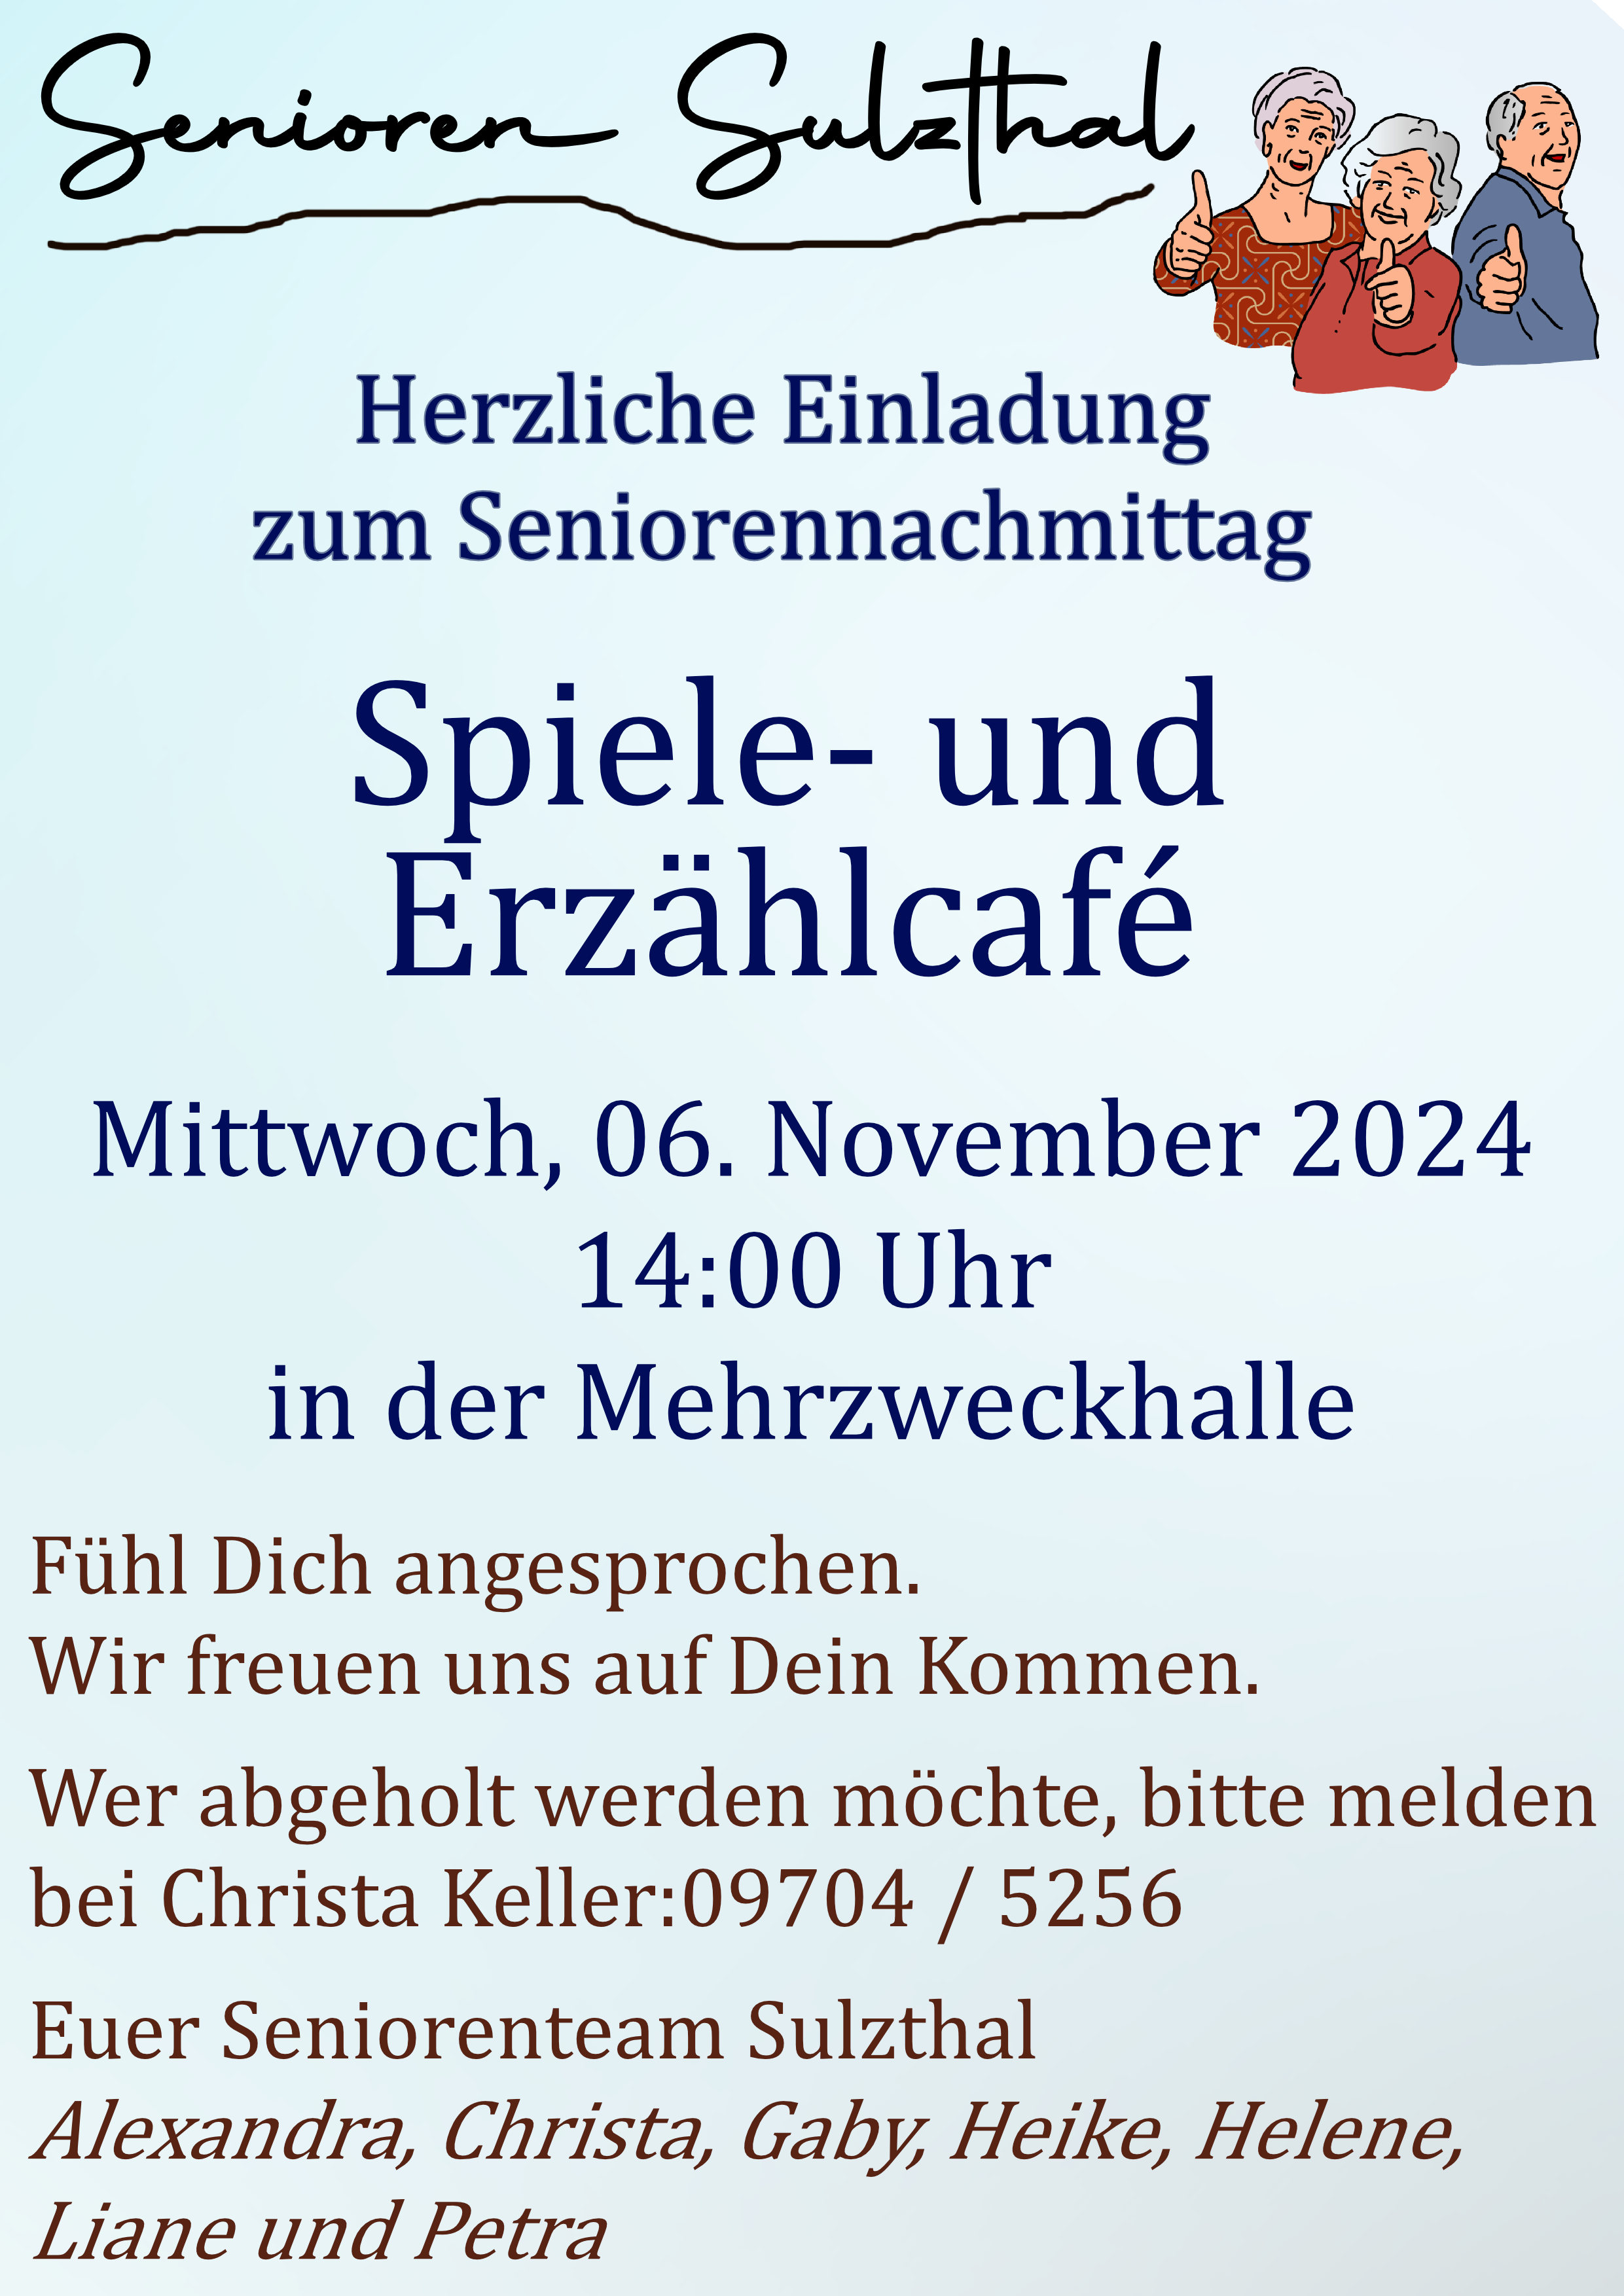 Senioren Sulzthal 2024 09 18 Erzählcafe